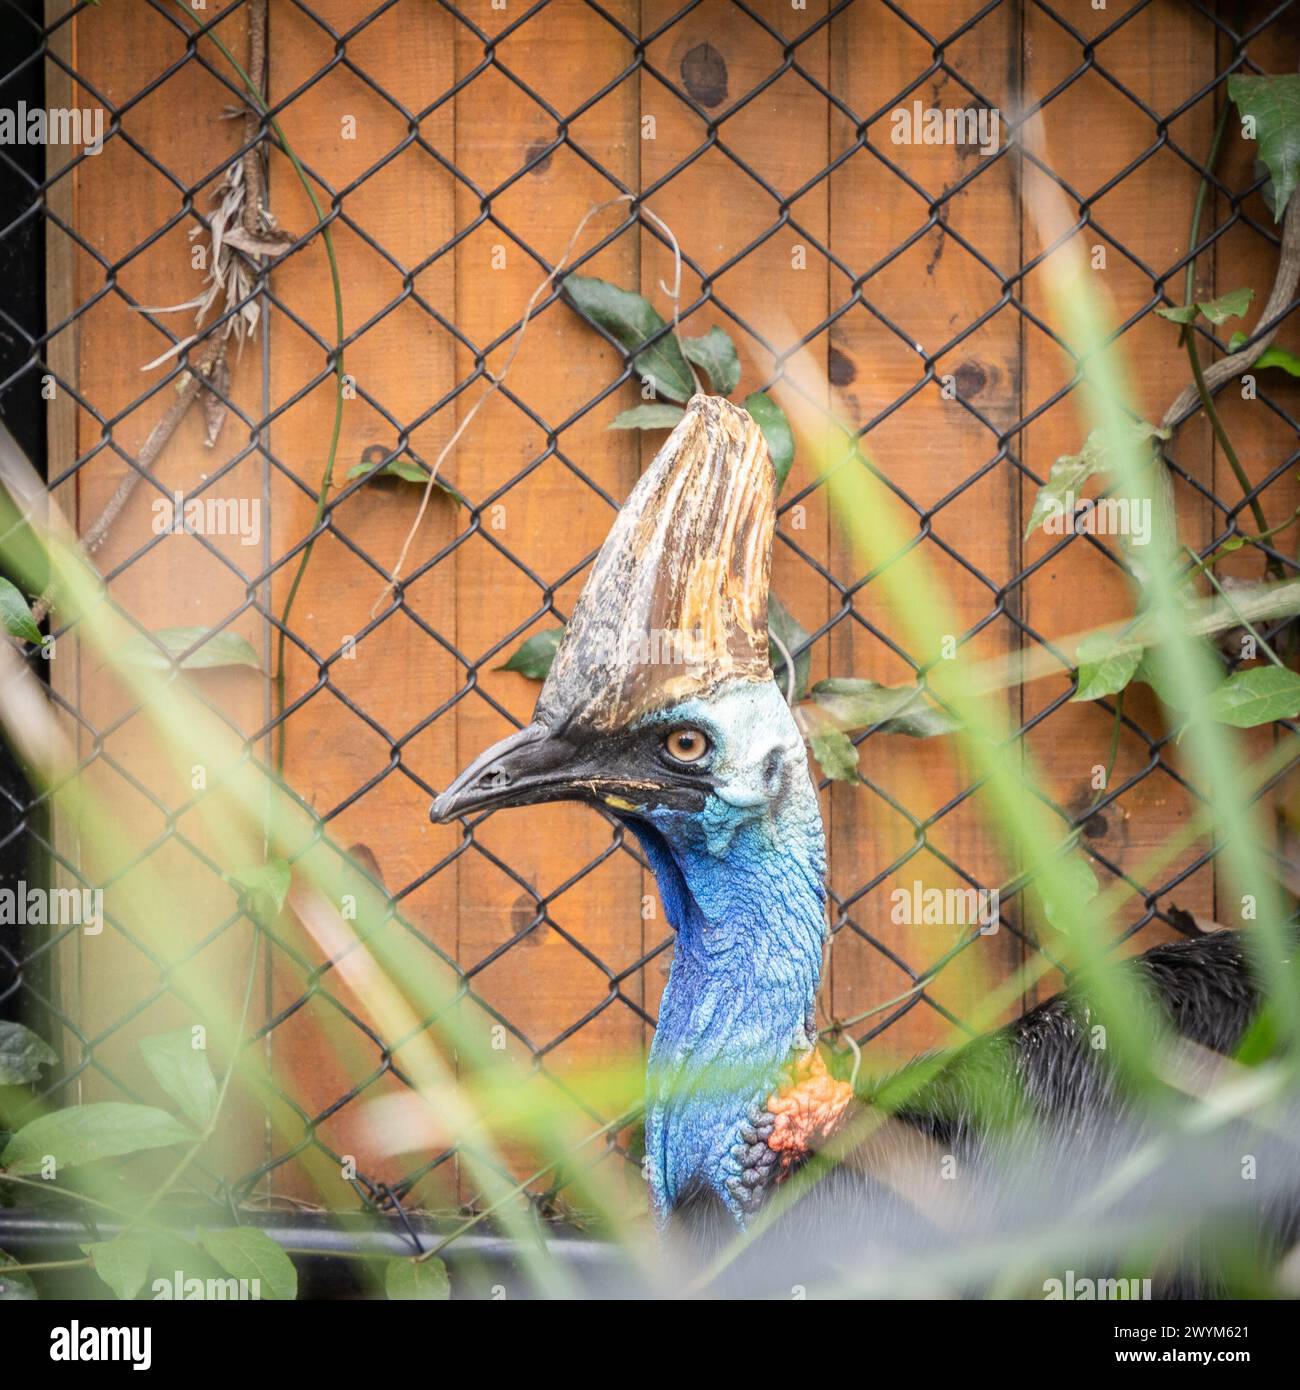 Colpo di testa di cassowary nascosto nel fogliame, fauna selvatica australiana. Foto Stock